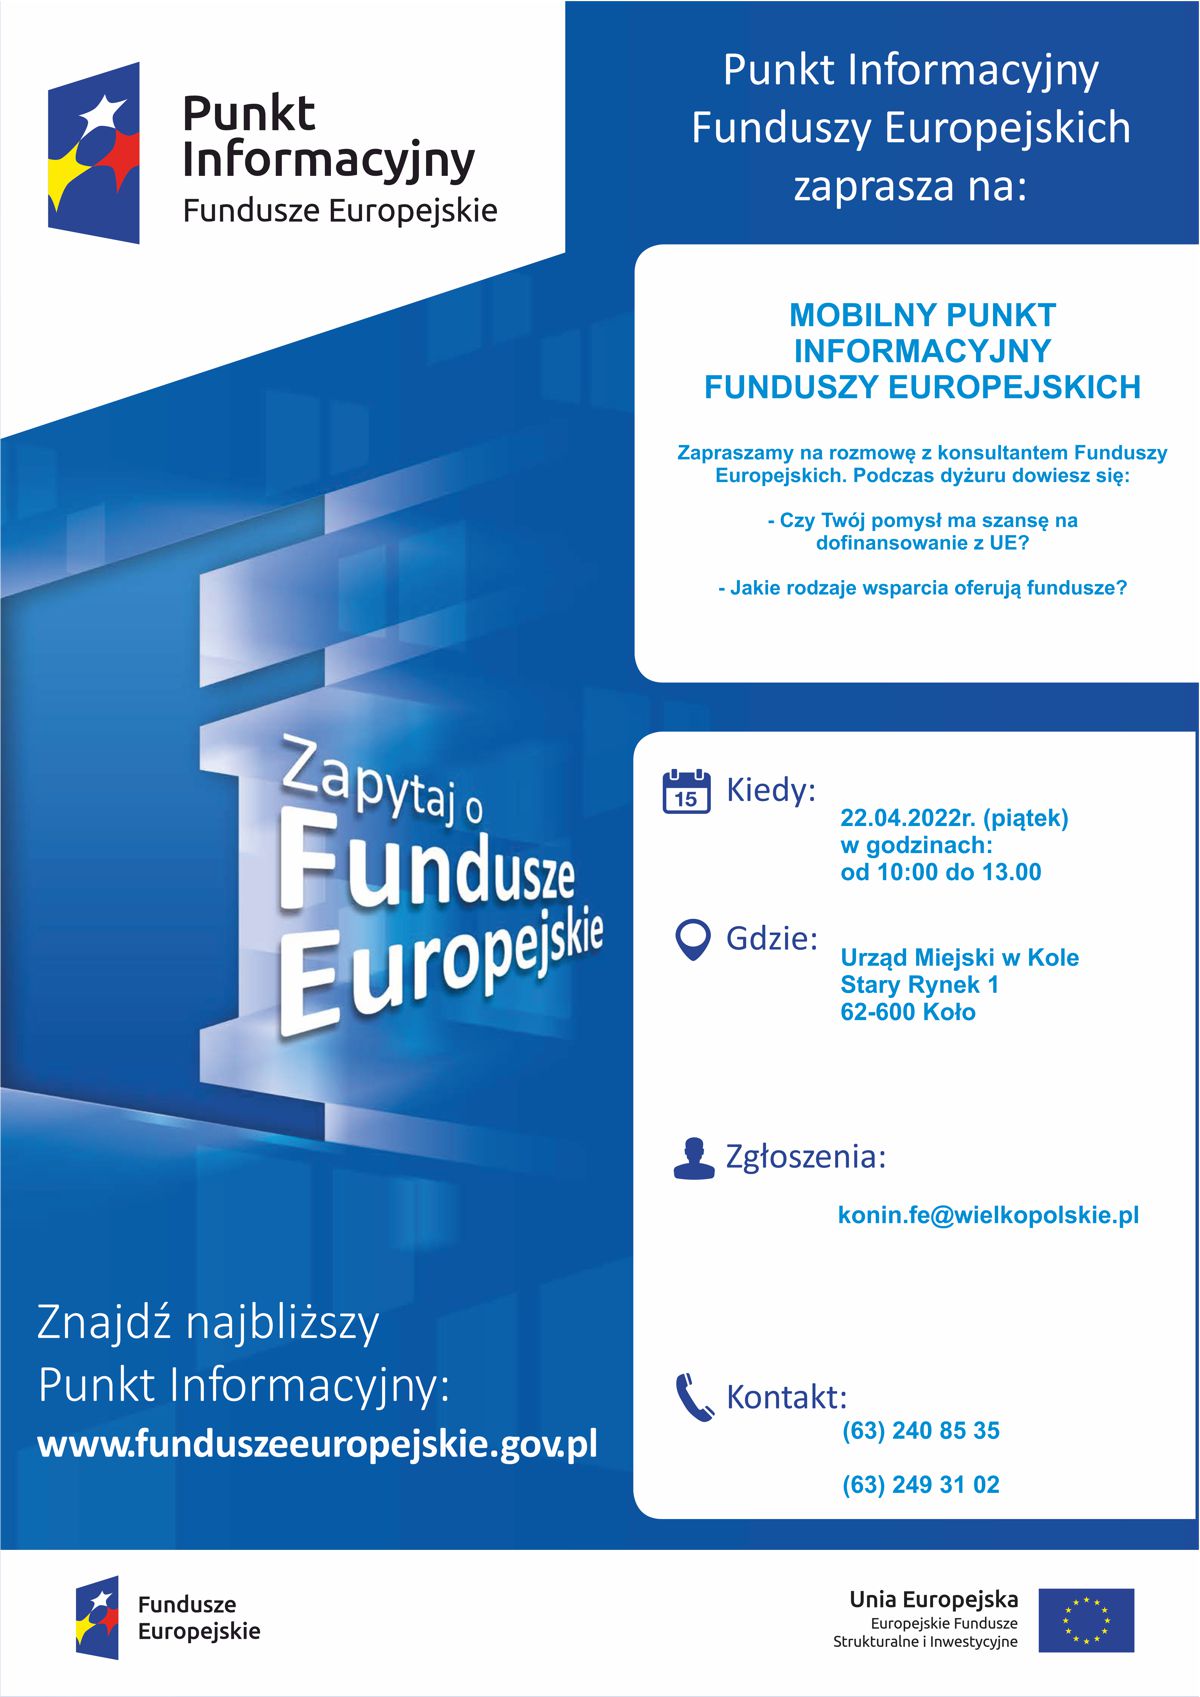 Infografika, Mobilny Punkt Informacyjny Funduszy Europejskich w Kole, tekst pod infografiką